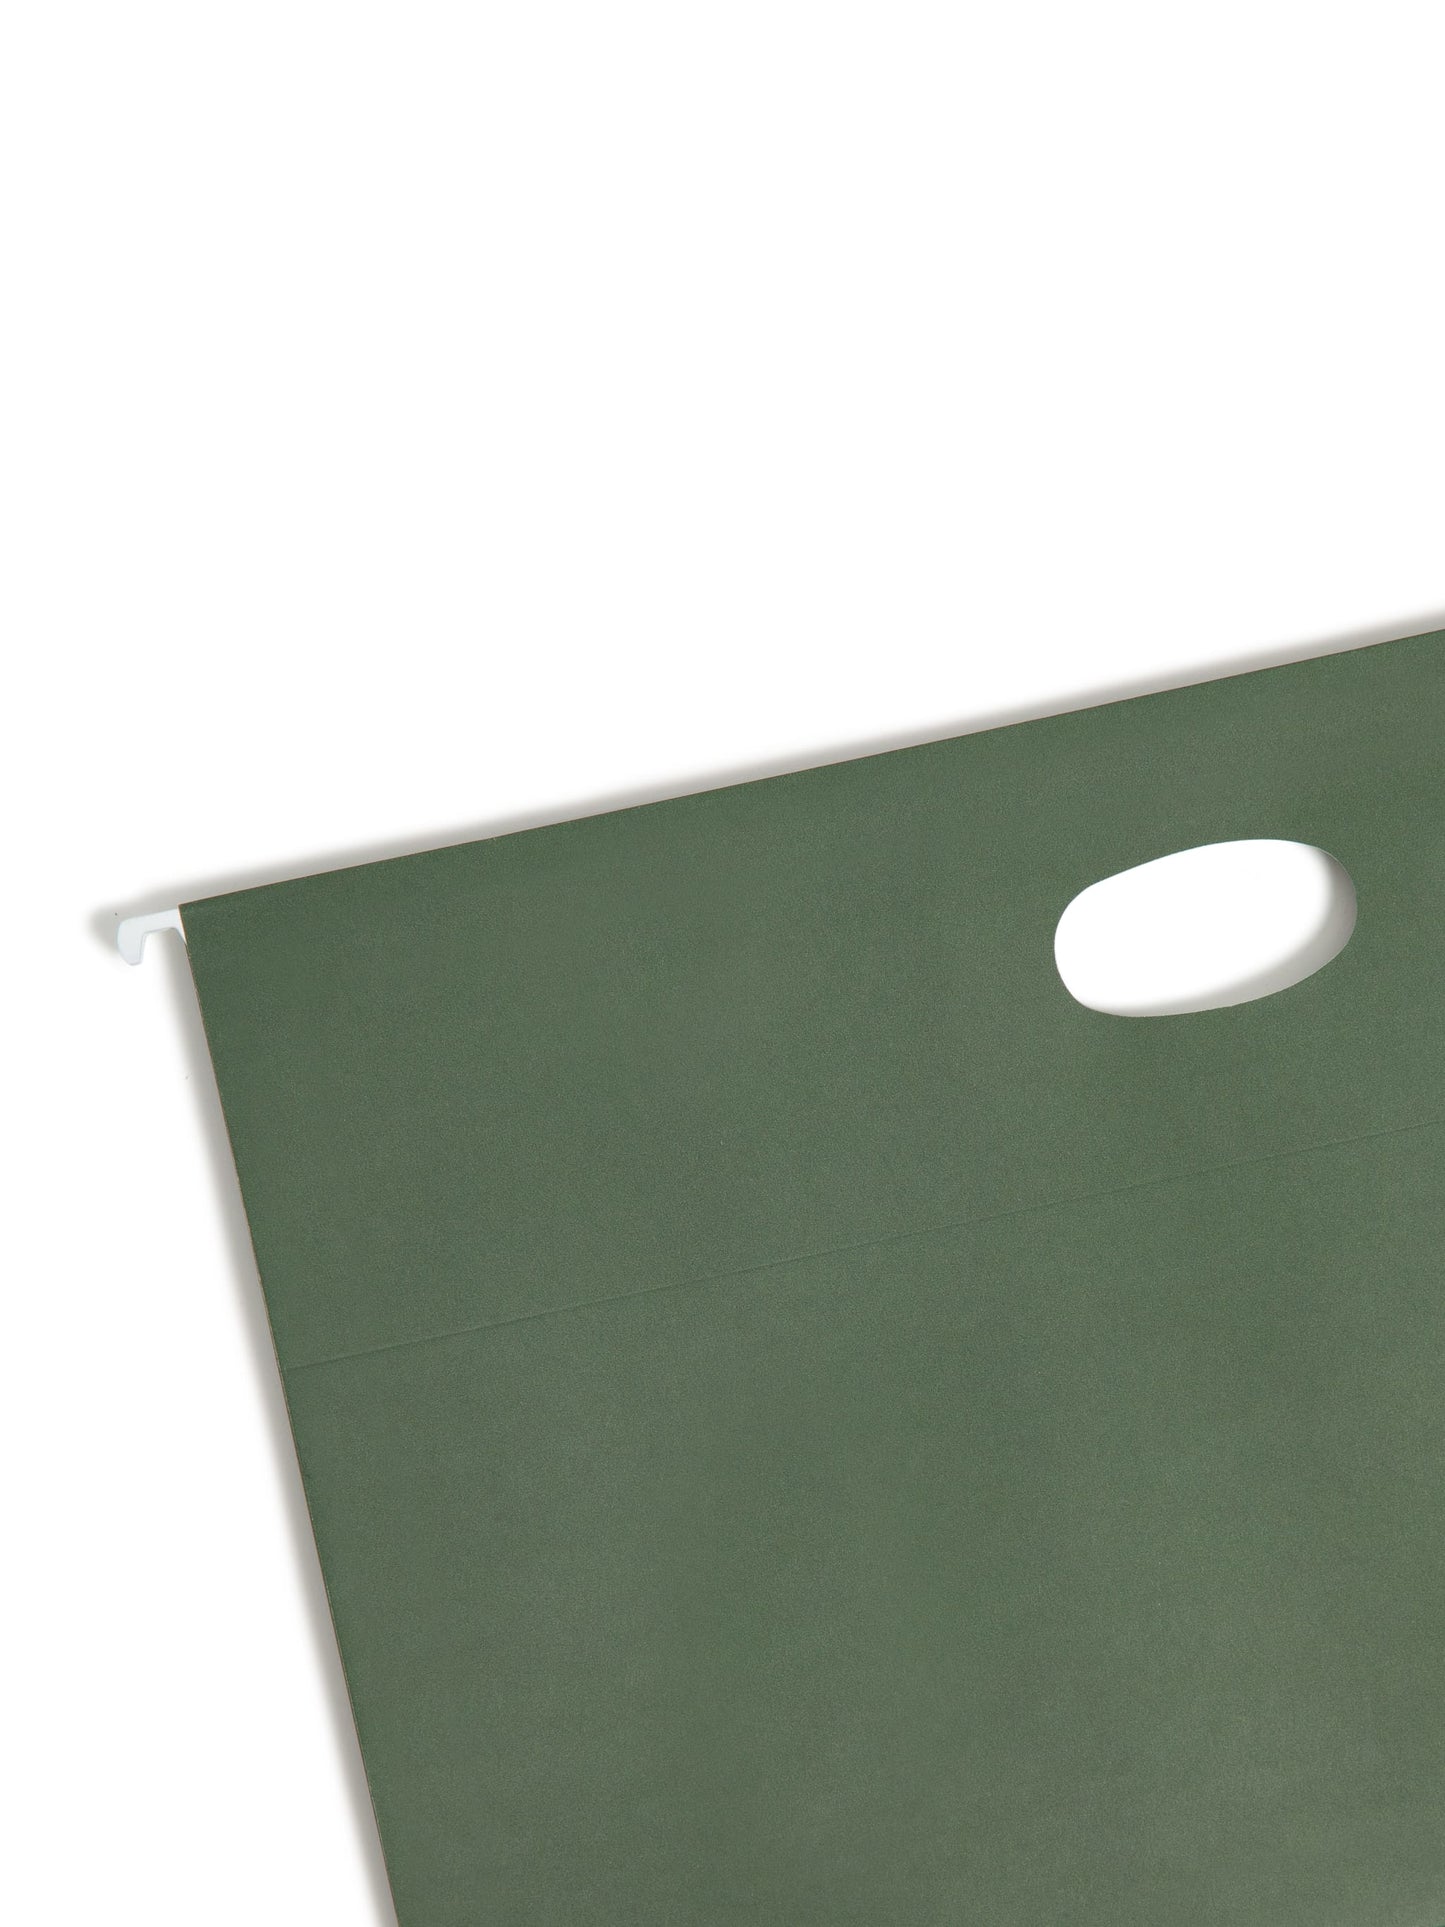 Hanging File Pockets, 1.75" Expansion, Standard Green Color, Legal Size, Set of 25, 086486643184